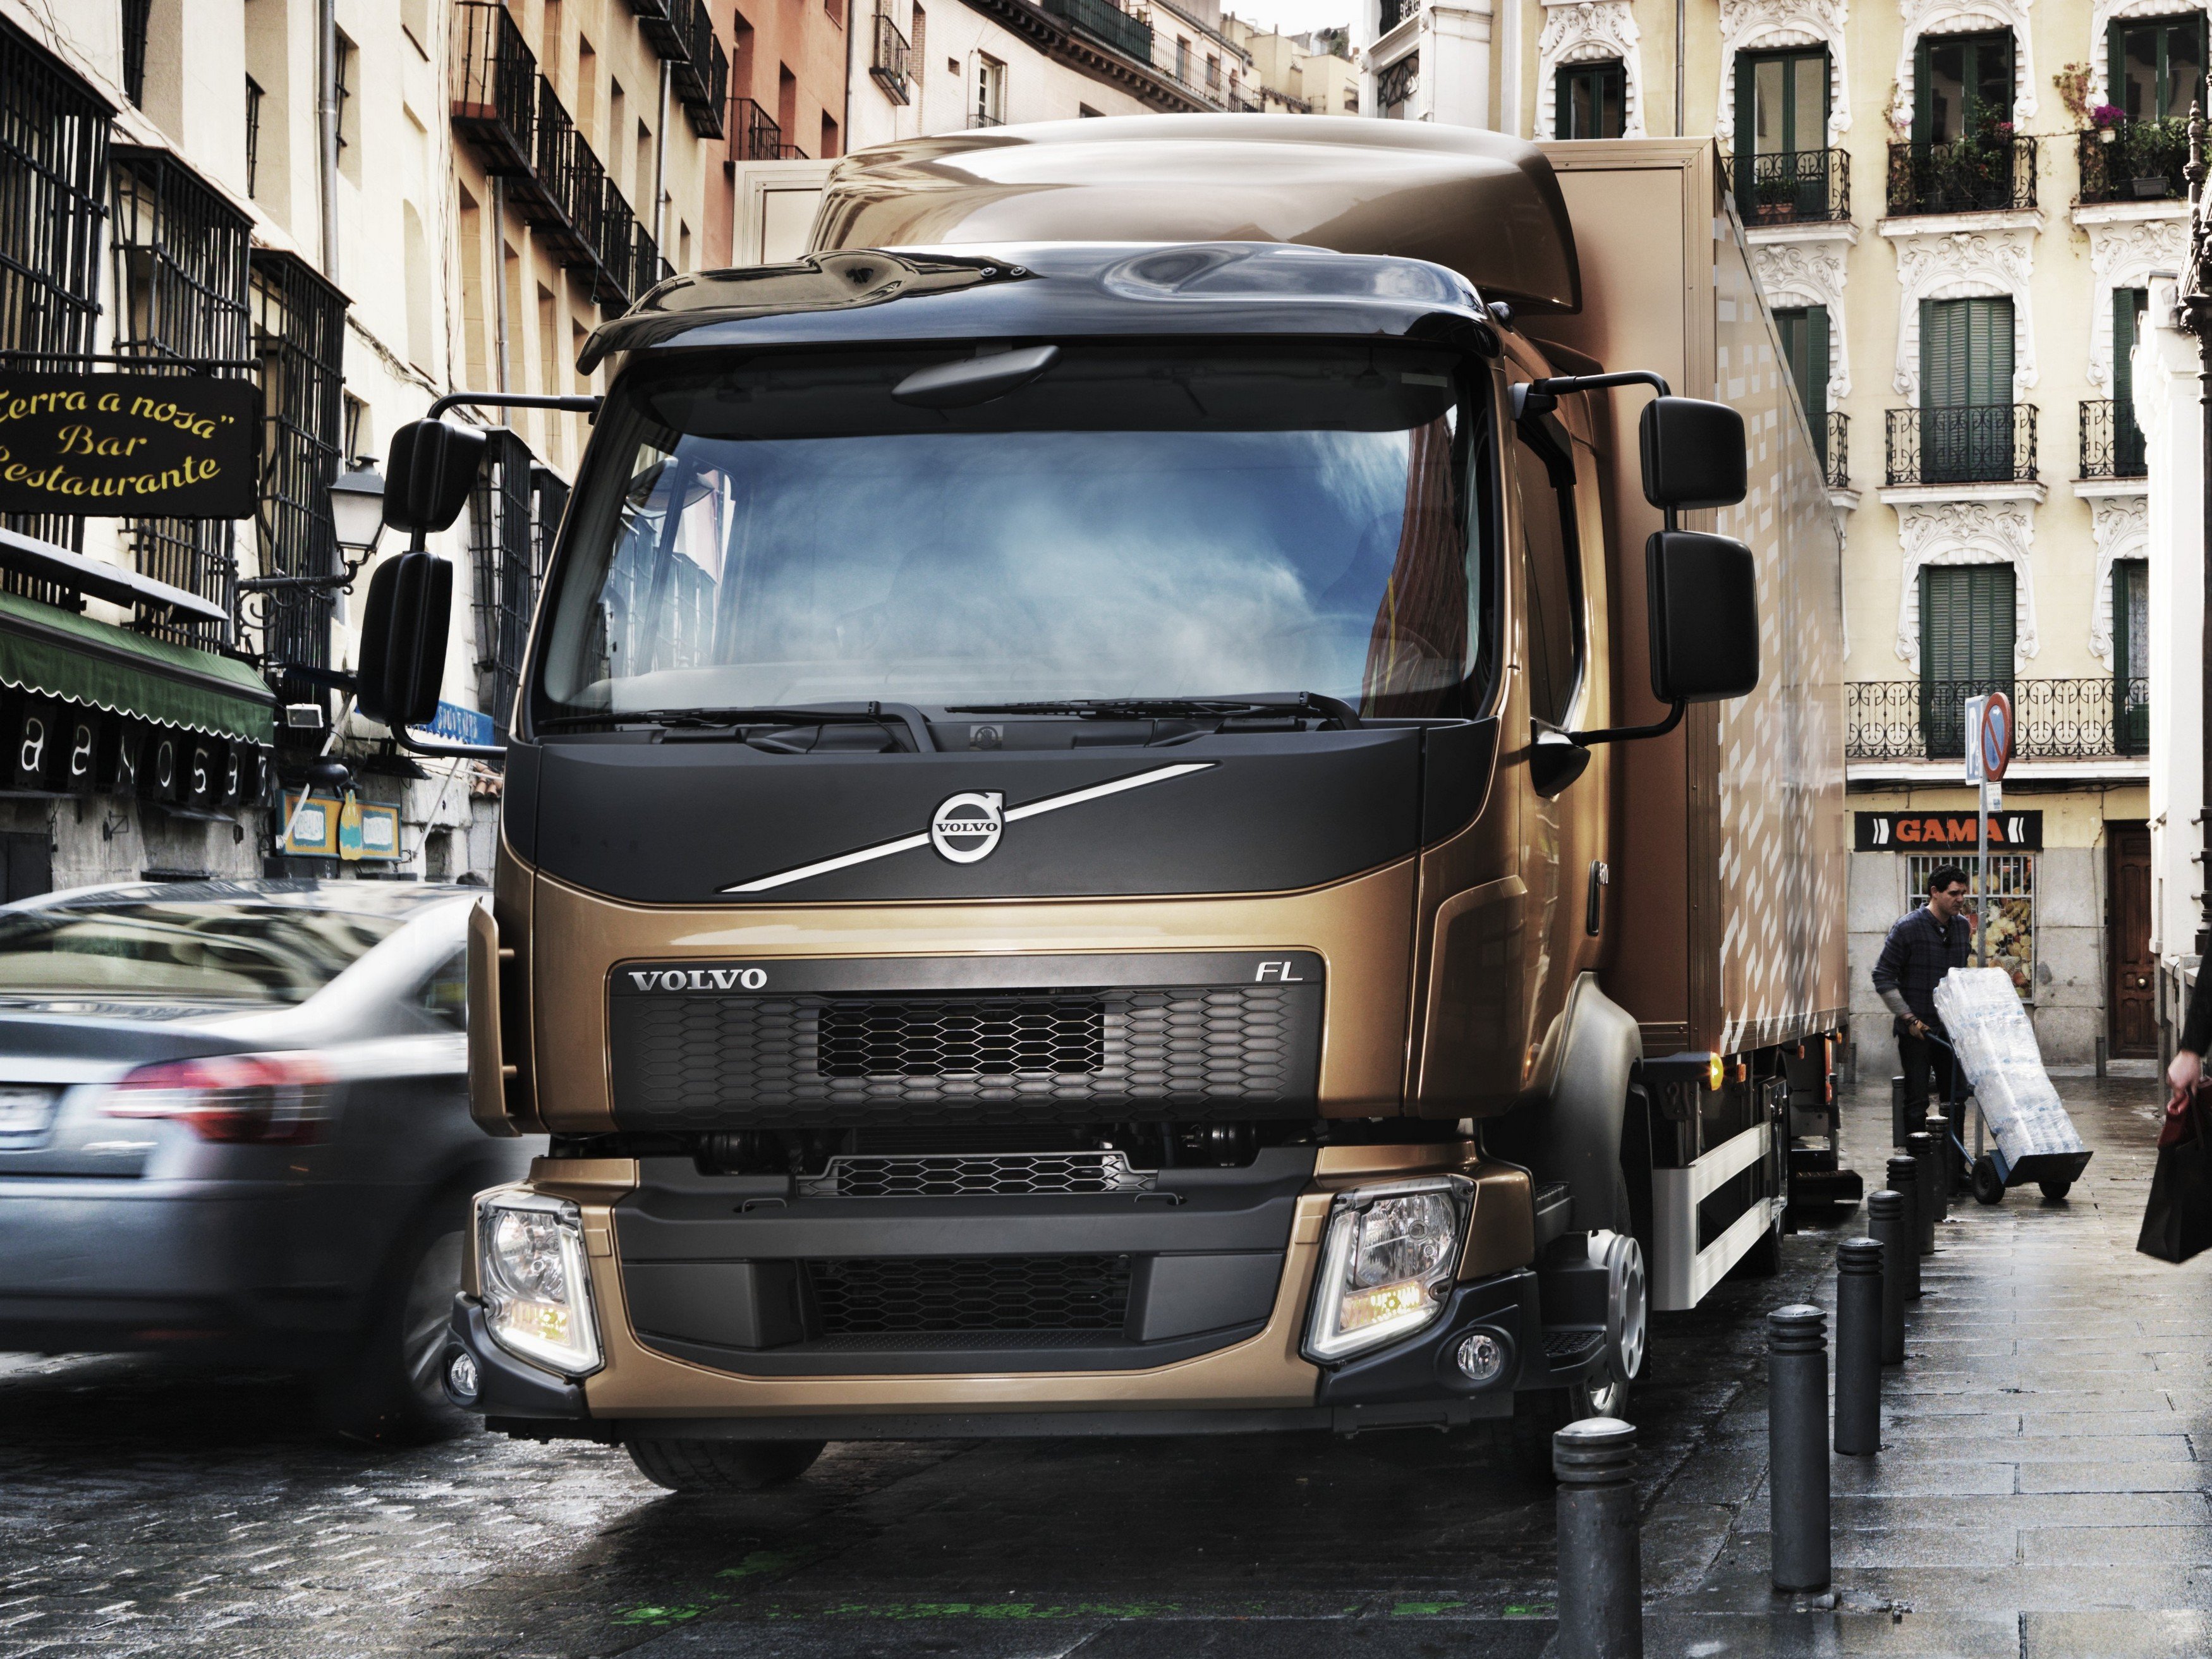 2013, Volvo, F l, 210, Semi, Tractor Wallpaper